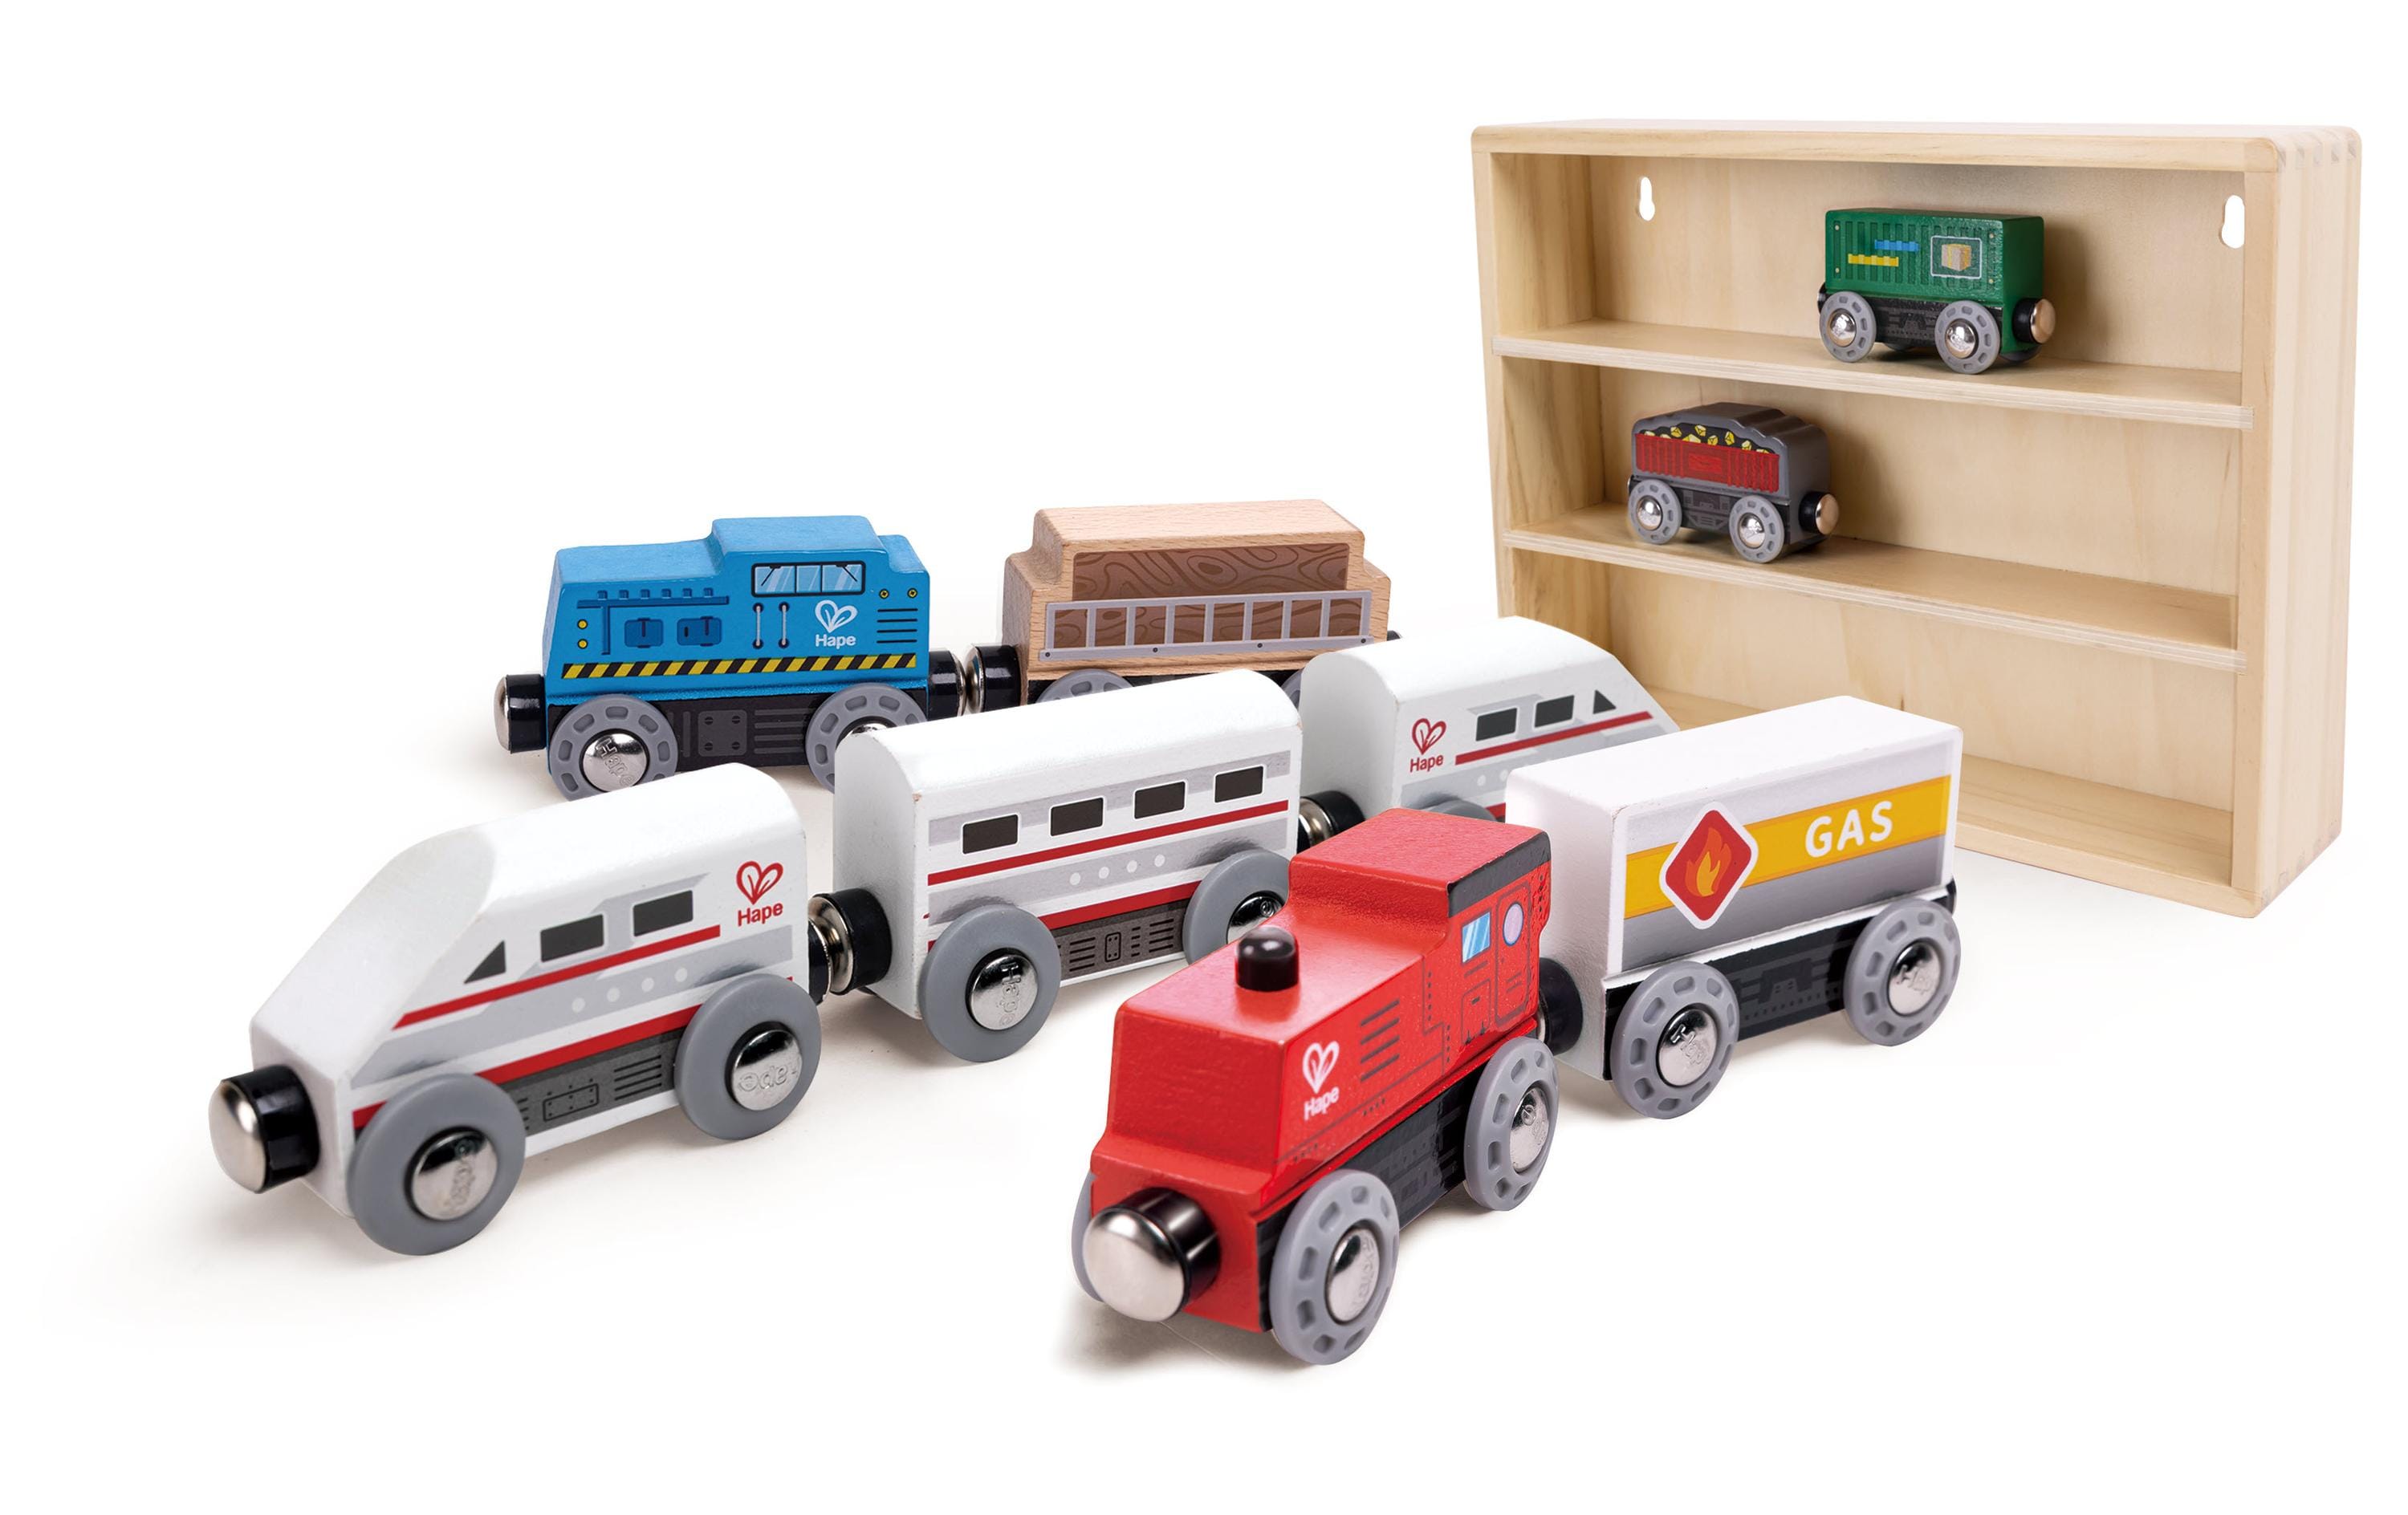 Hape Wooden Trains Collection Set